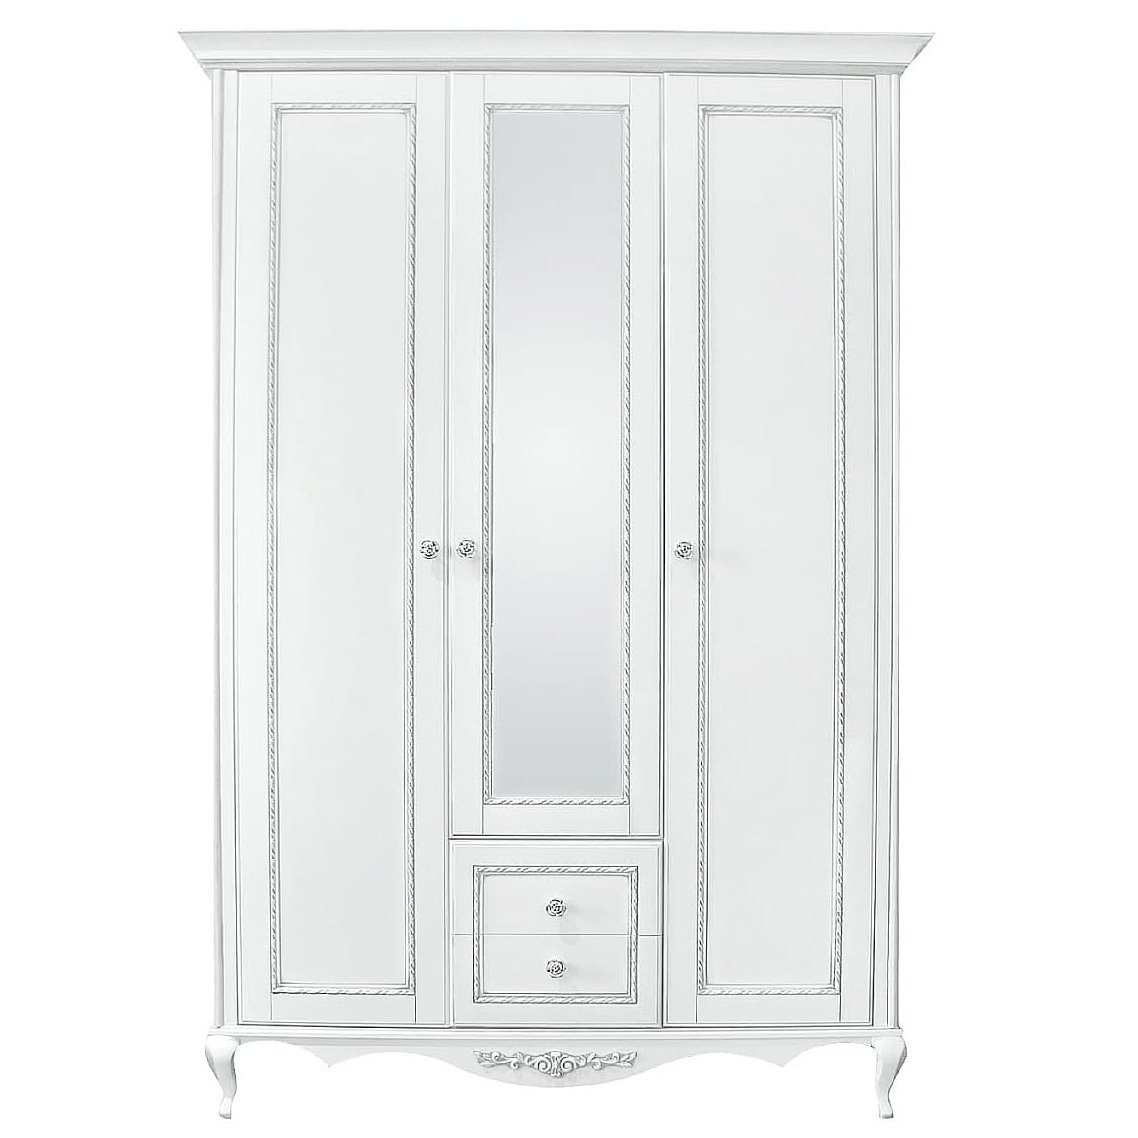 Шкаф платяной Timber Неаполь, 3-х дверный с зеркалом 159x65x227 см цвет: белый с серебром (T-523)T-523